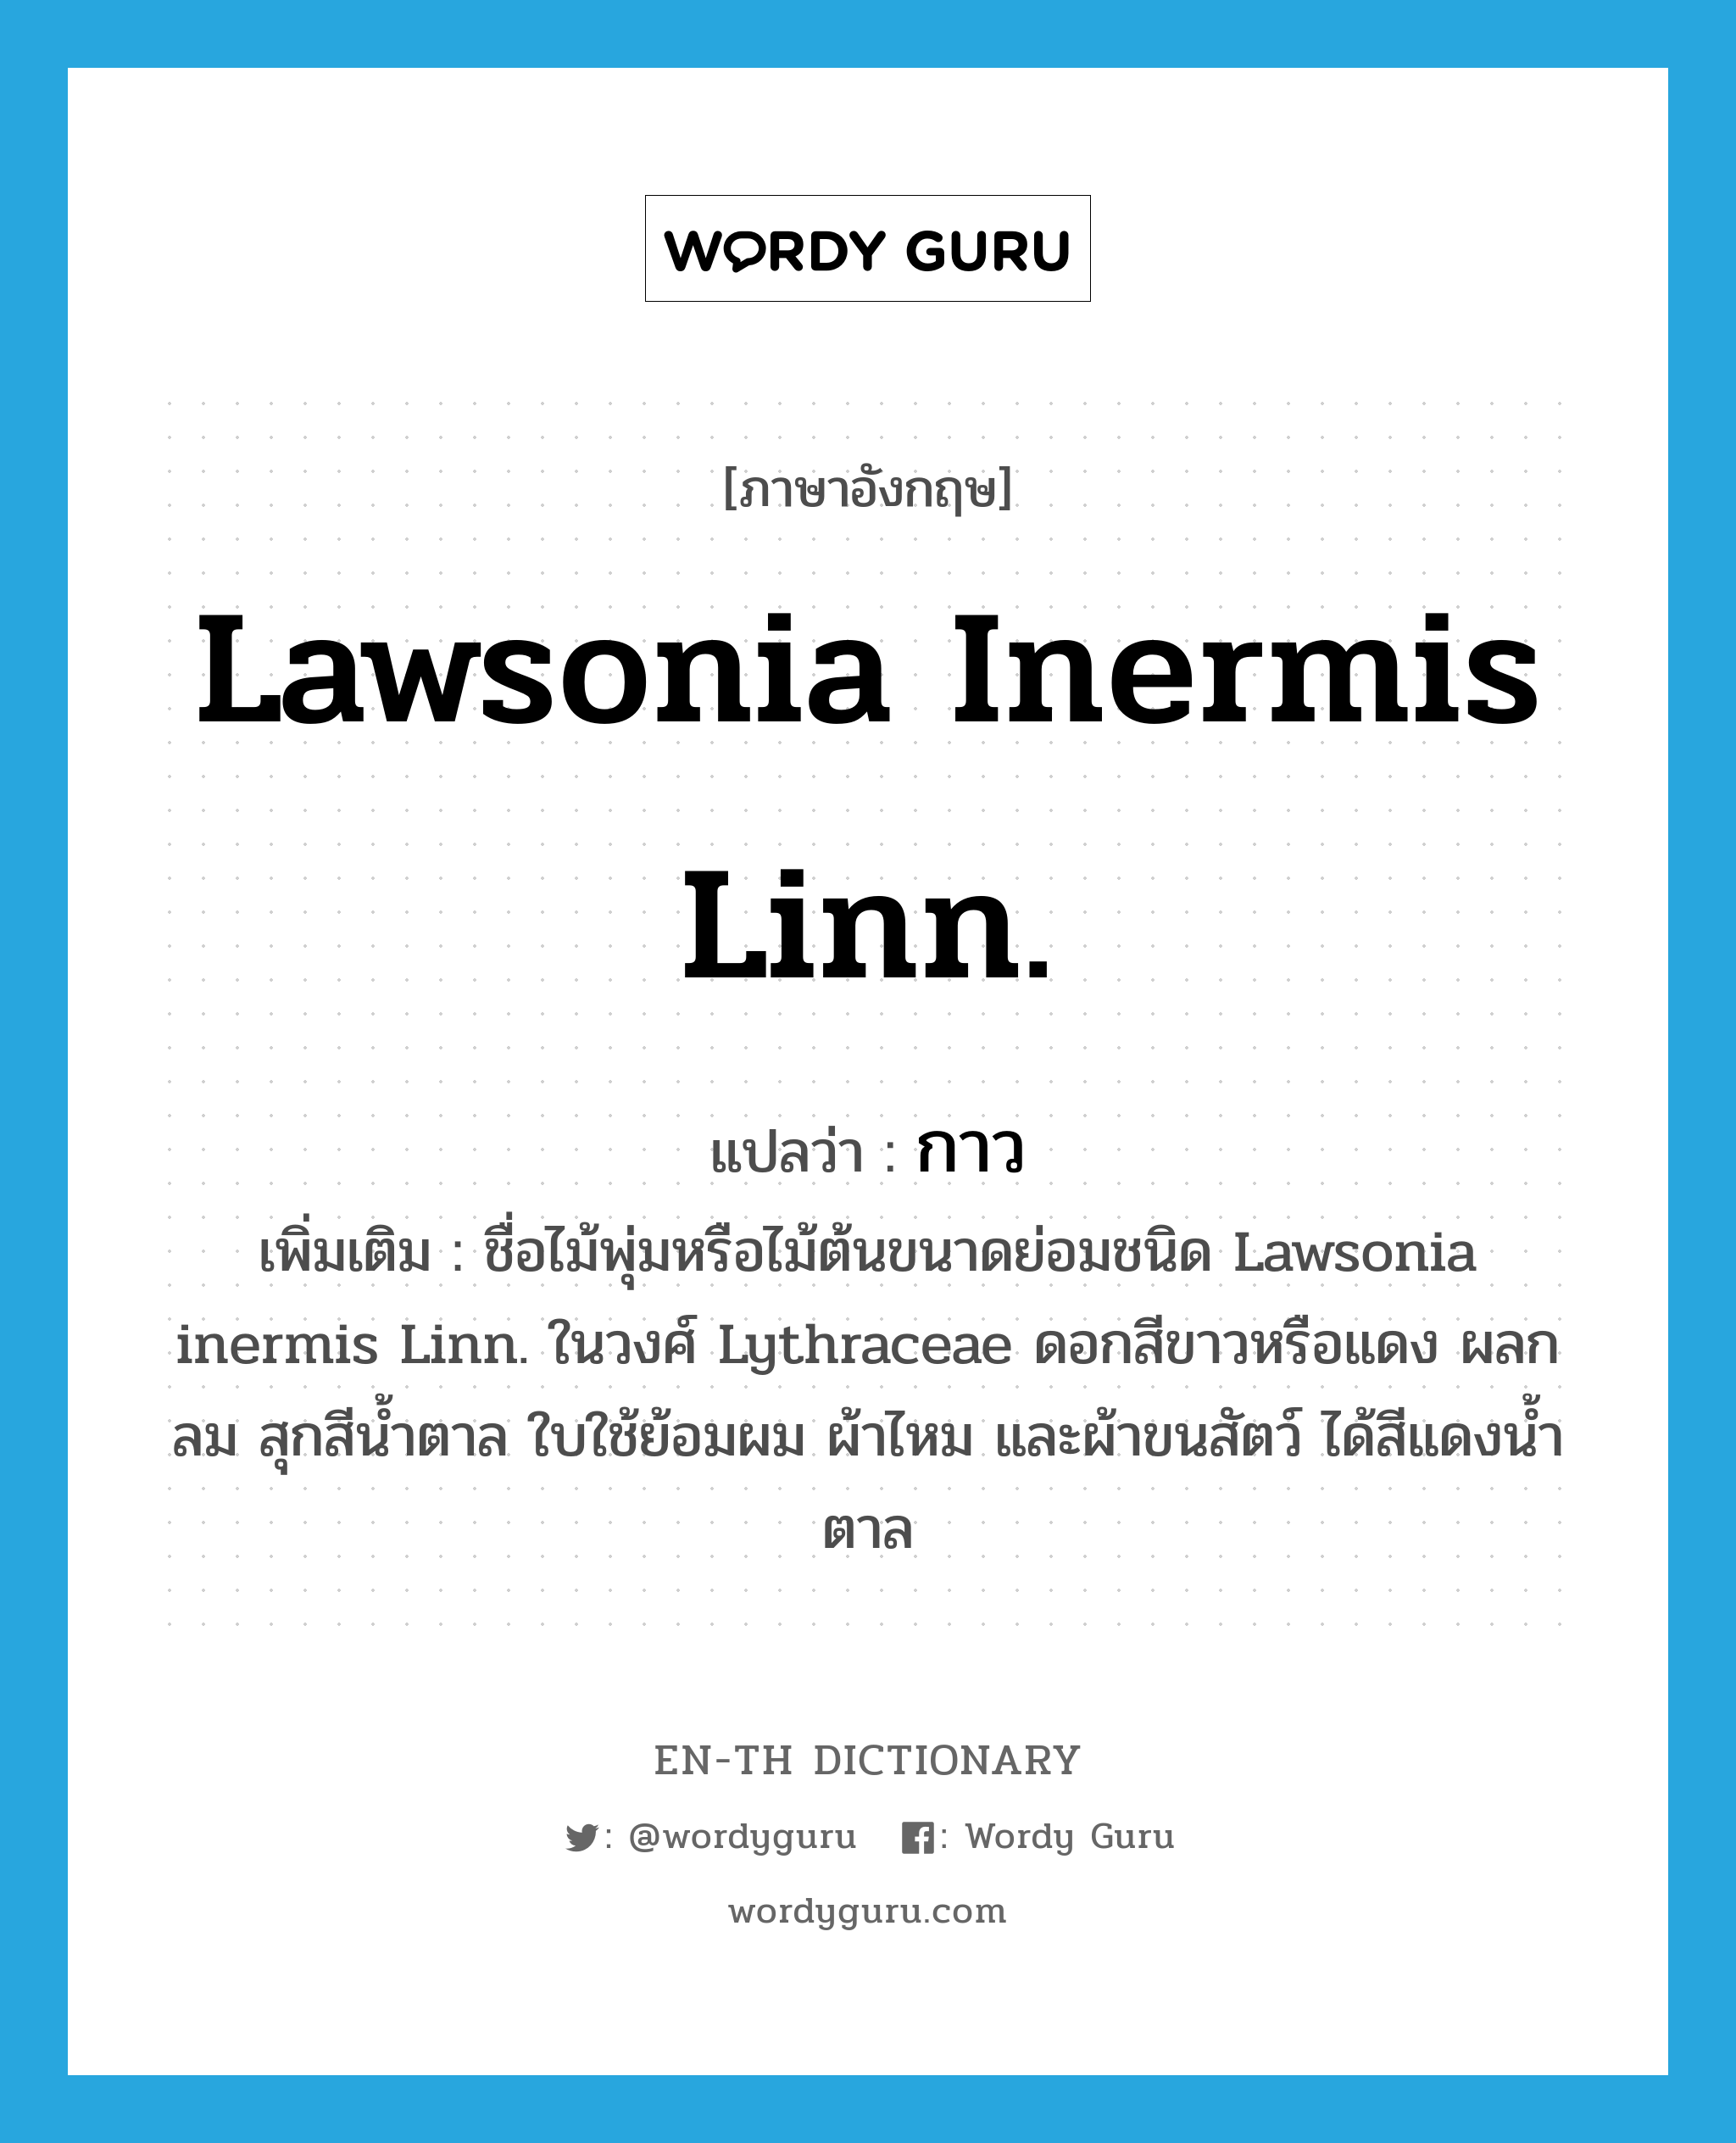 กาว ภาษาอังกฤษ?, คำศัพท์ภาษาอังกฤษ กาว แปลว่า Lawsonia inermis Linn. ประเภท N เพิ่มเติม ชื่อไม้พุ่มหรือไม้ต้นขนาดย่อมชนิด Lawsonia inermis Linn. ในวงศ์ Lythraceae ดอกสีขาวหรือแดง ผลกลม สุกสีน้ำตาล ใบใช้ย้อมผม ผ้าไหม และผ้าขนสัตว์ ได้สีแดงน้ำตาล หมวด N